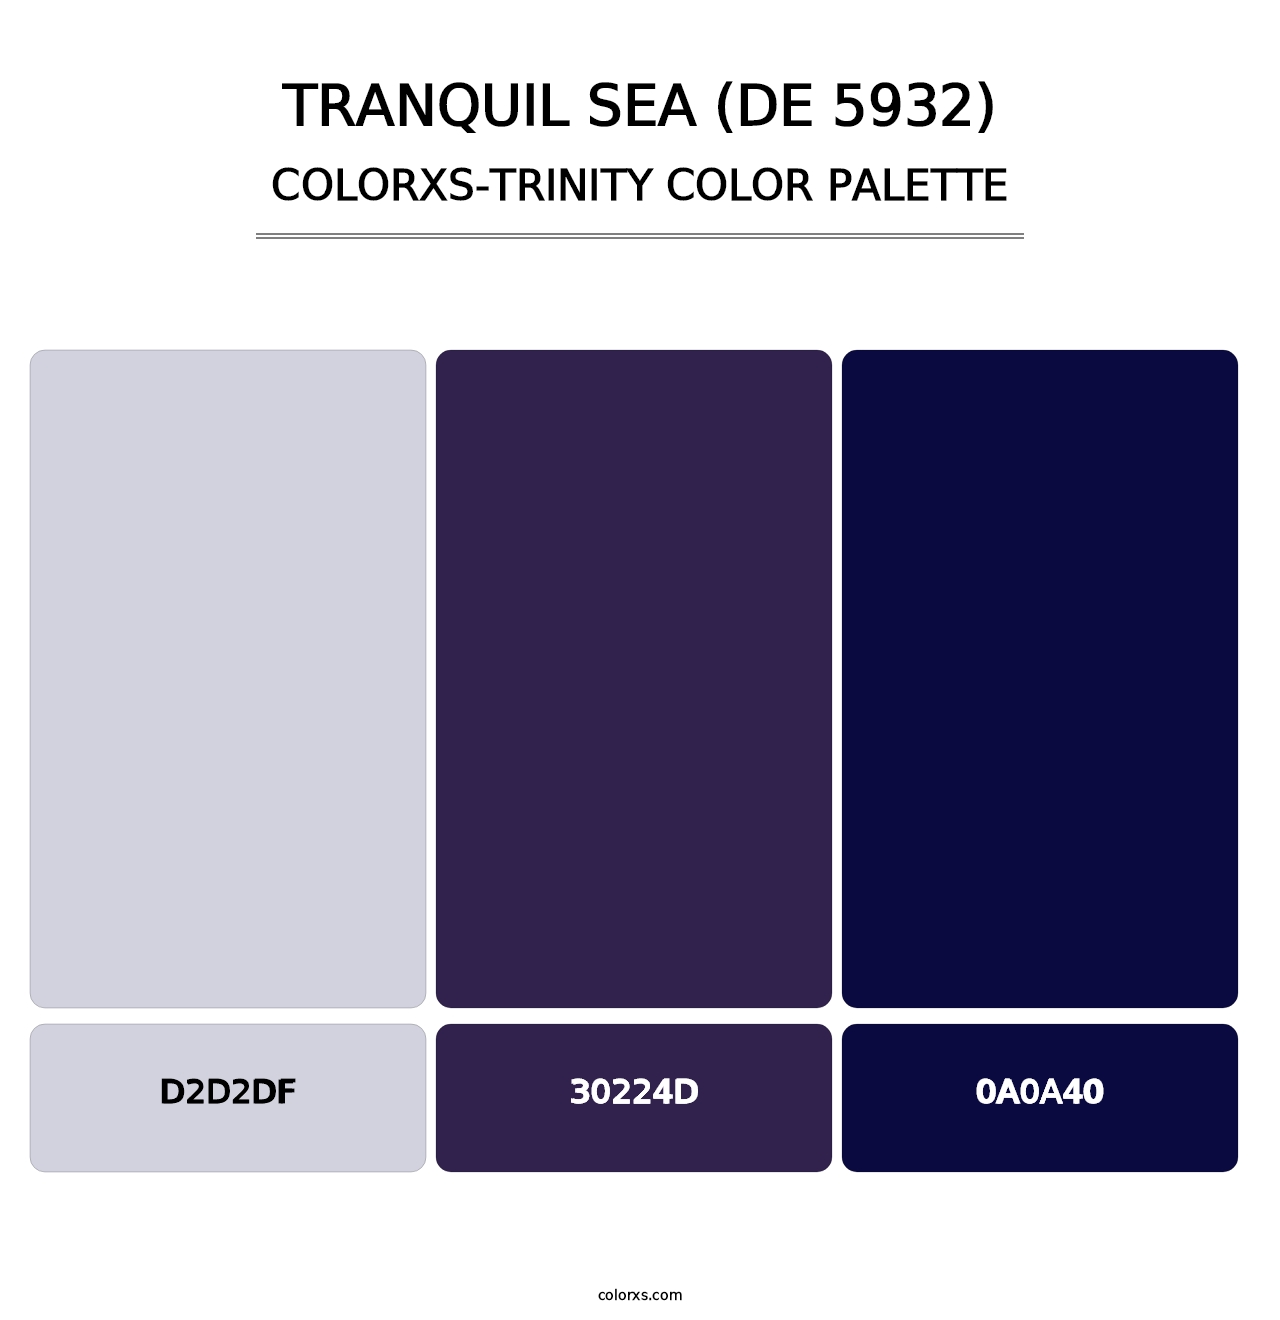 Tranquil Sea (DE 5932) - Colorxs Trinity Palette